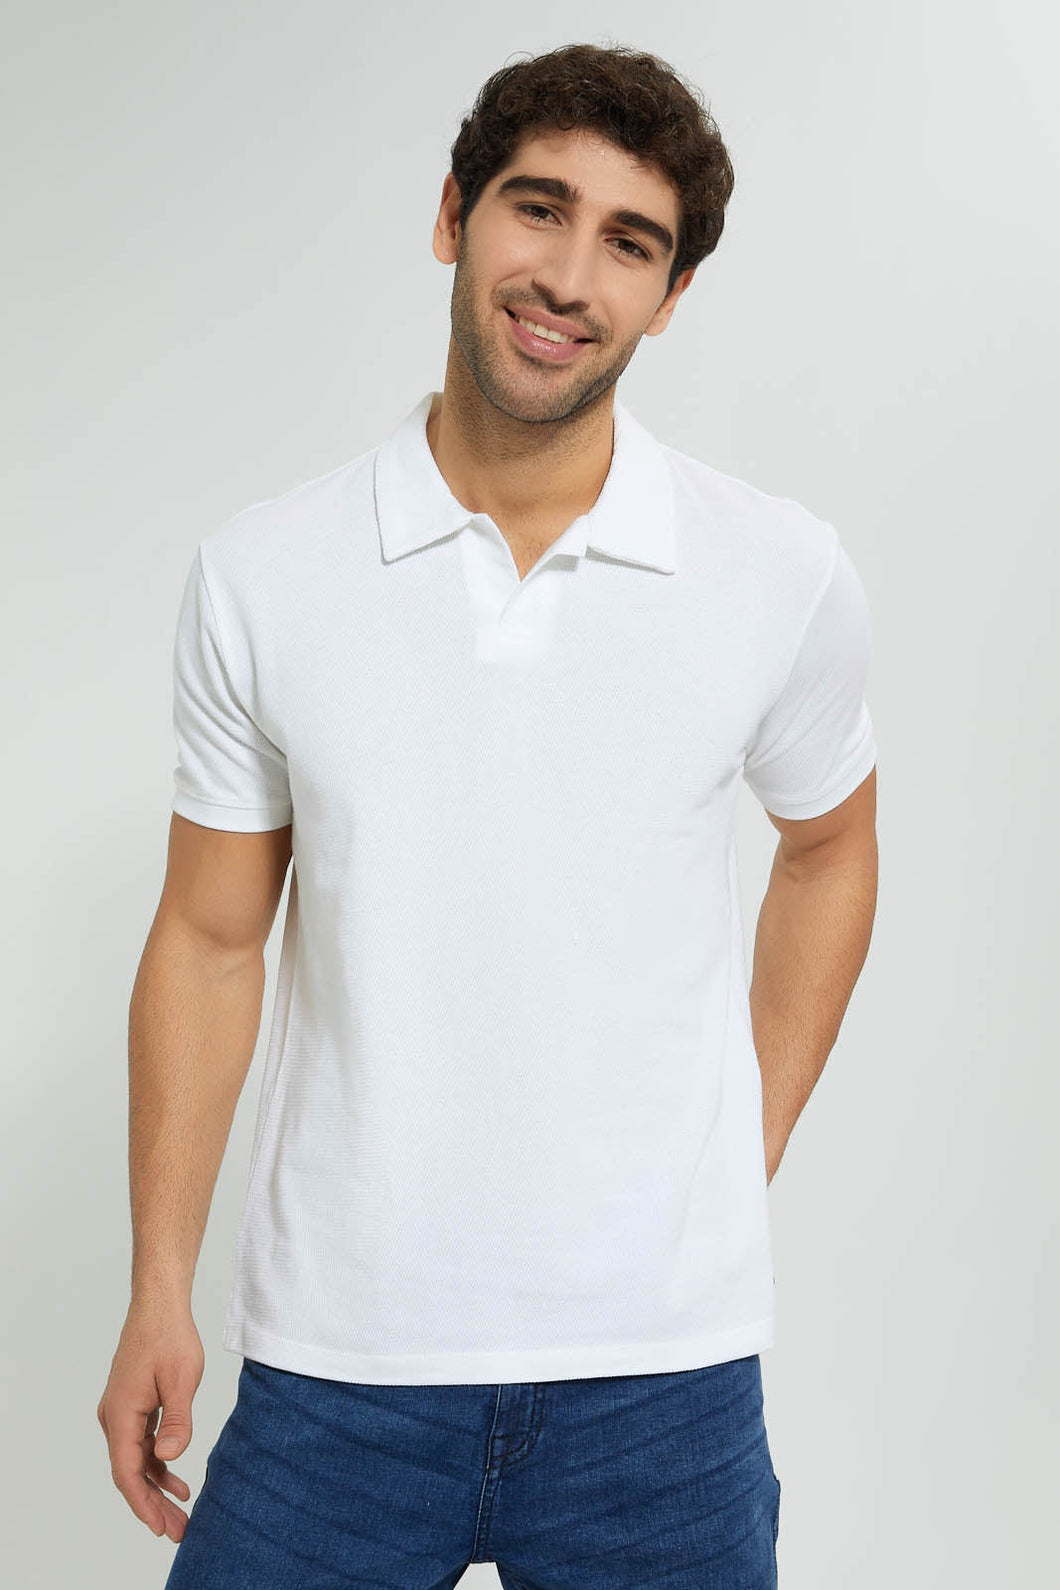 White Buttonless Polo Shirt تيشيرت بولو بدون أزرار باللون الأبيض